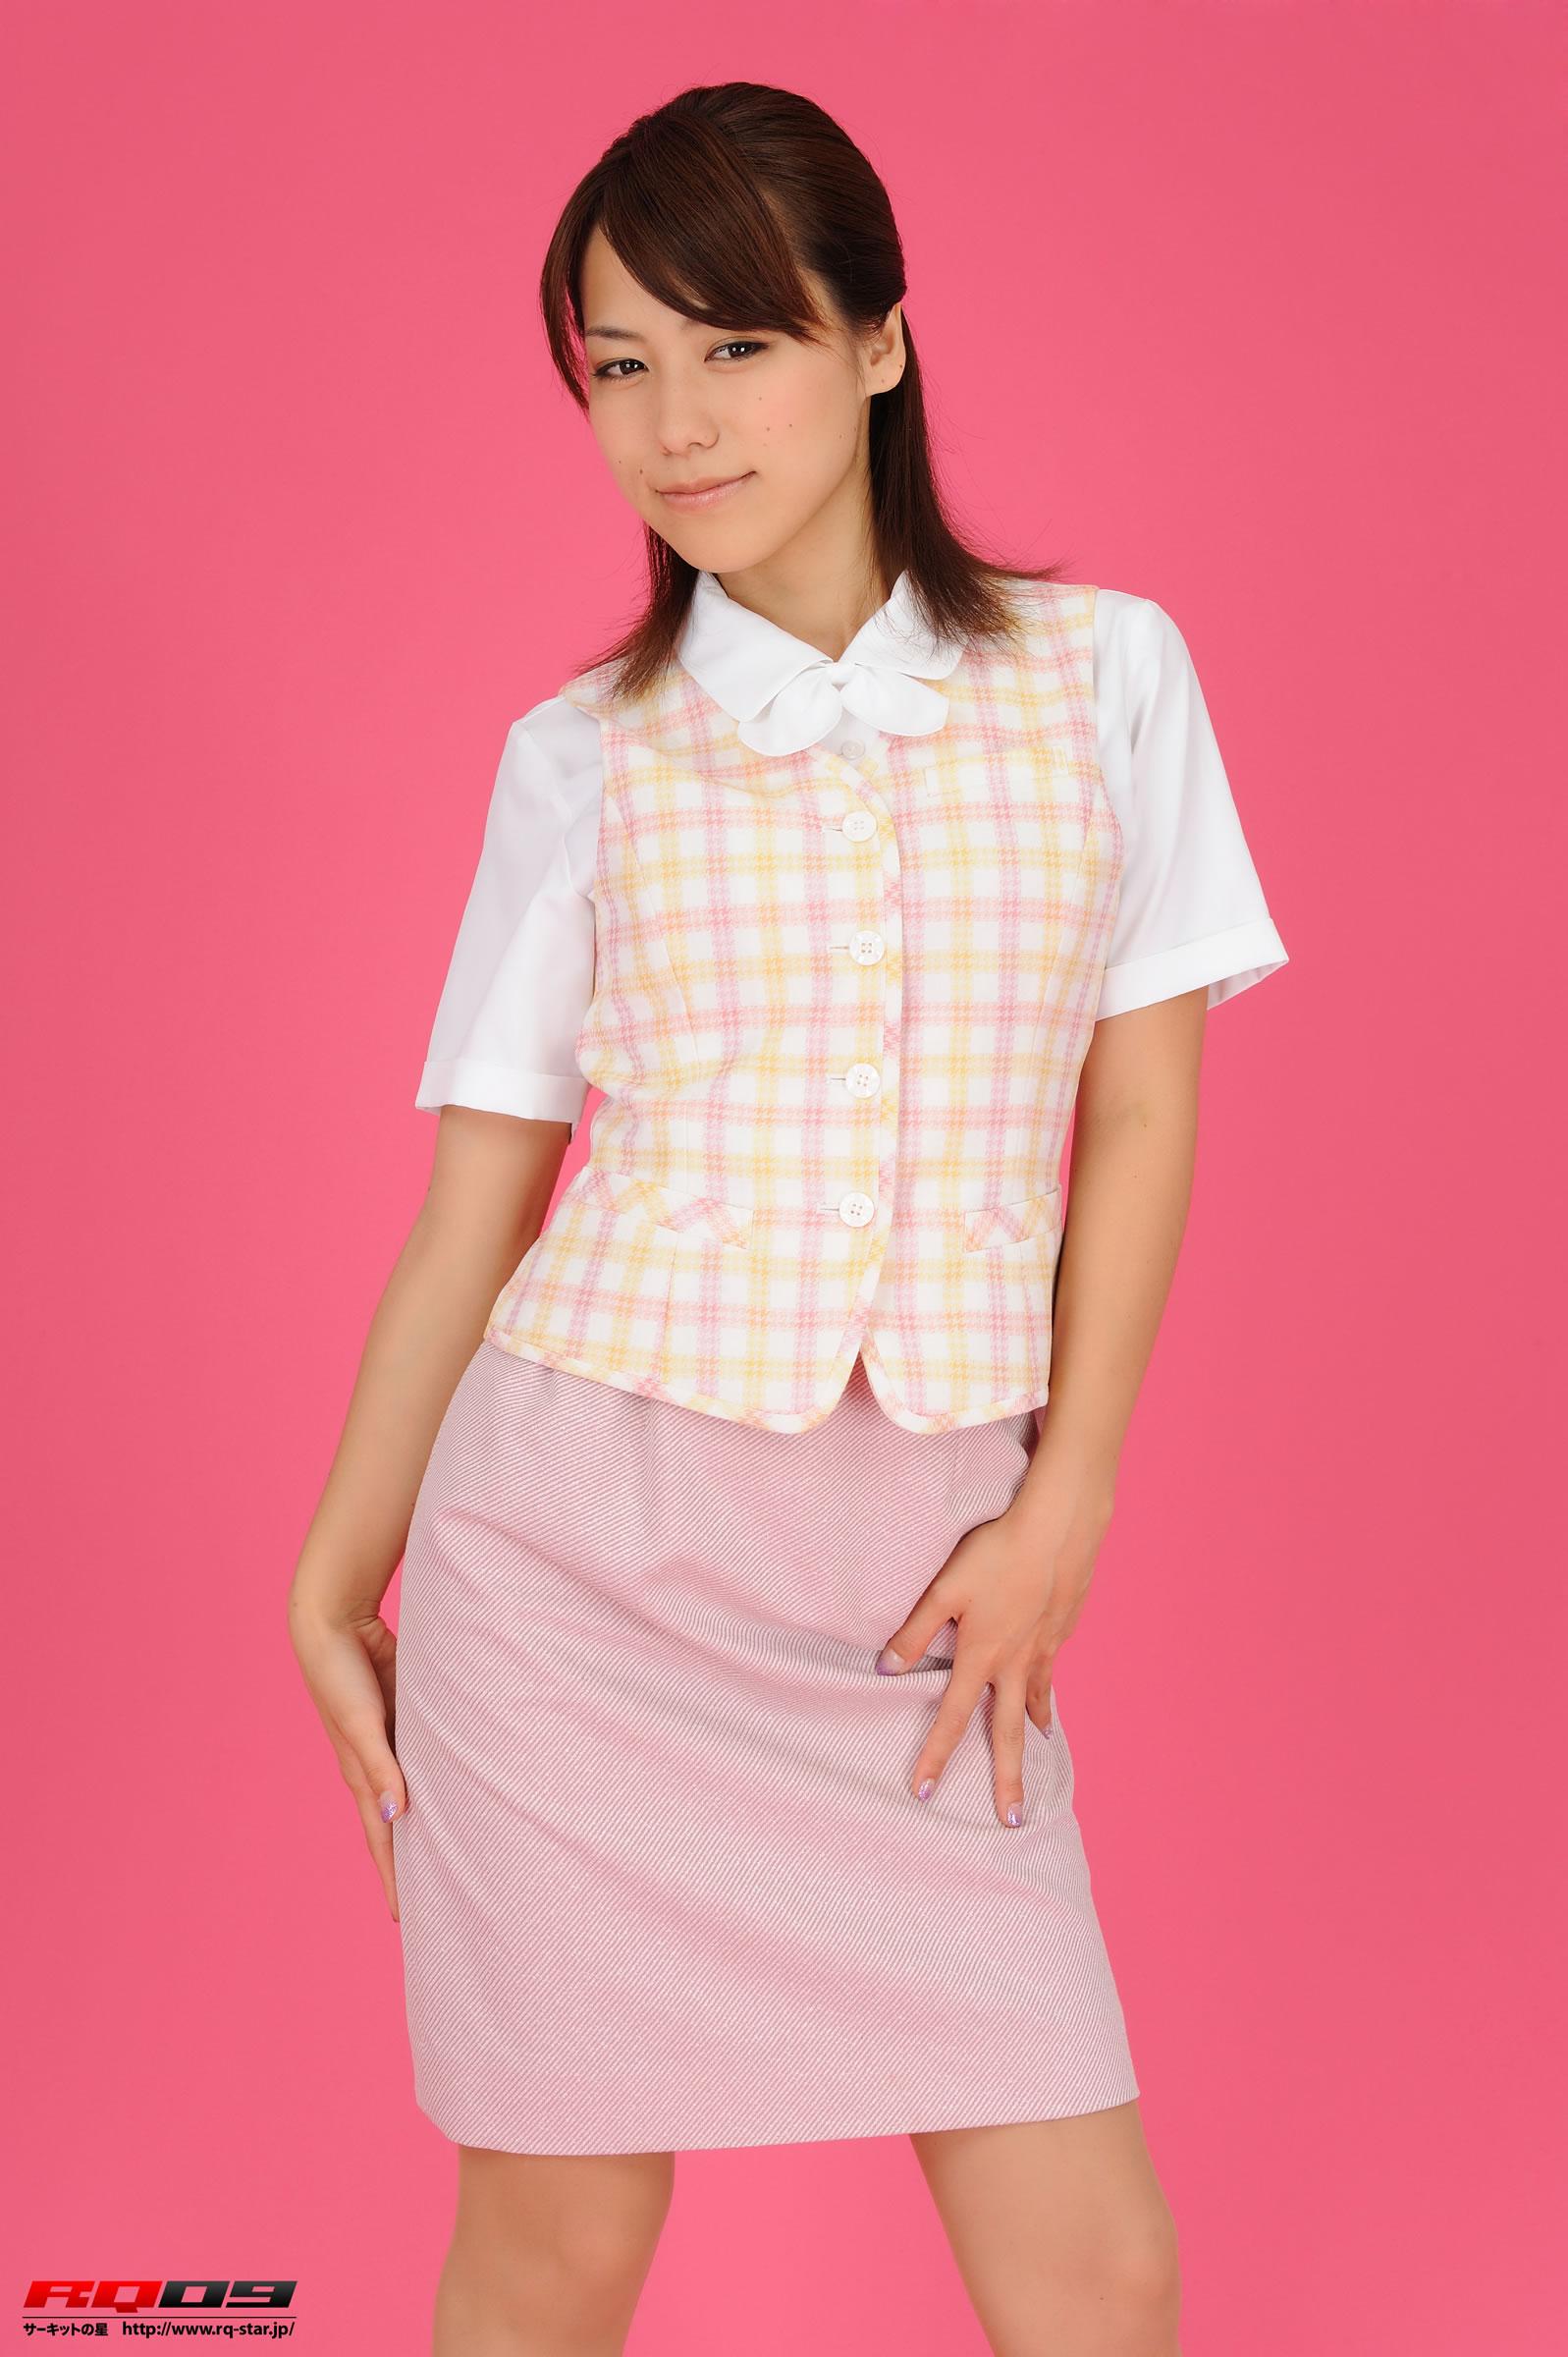 [RQ-STAR写真]NO.00178 性感女秘书 柏木美里（かしわぎ みさと,Misato Kashiwagi）粉色制服加短裙私房写真集,